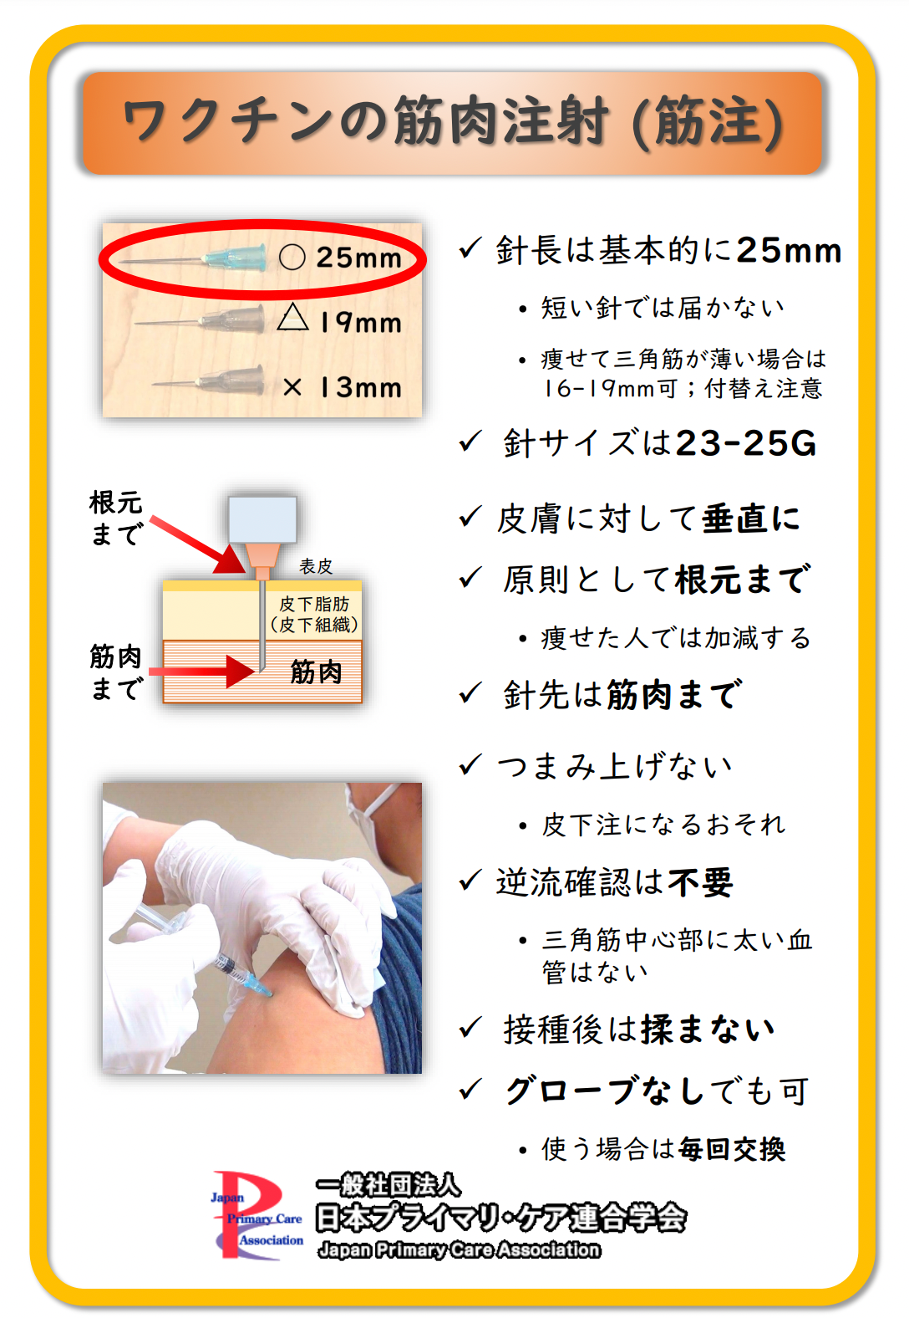 コロナワクチンの注射部位は 筋肉注射とは バイタリティクリニック神戸三宮 Jr元町駅から徒歩1分